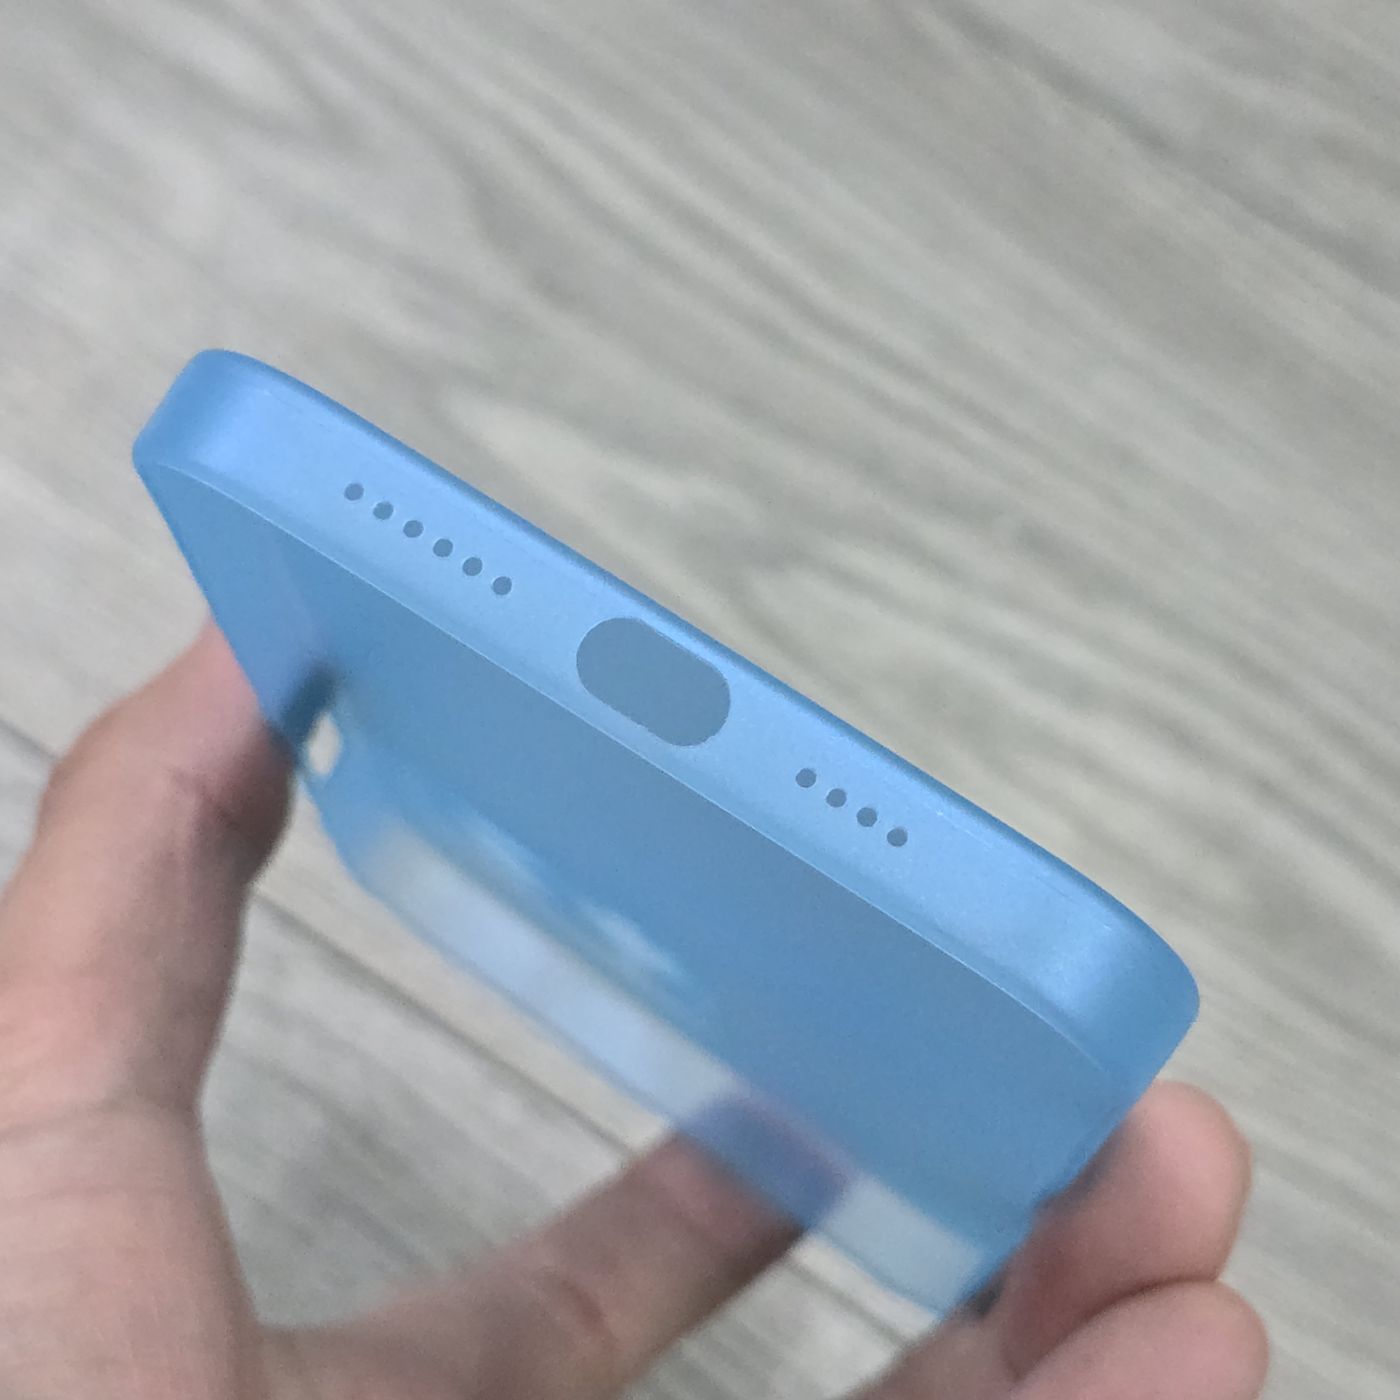 Ốp siêu mỏng Memumi 0.3mm cho iPhone 13 Pro Max (Xanh Dương Nhạt)